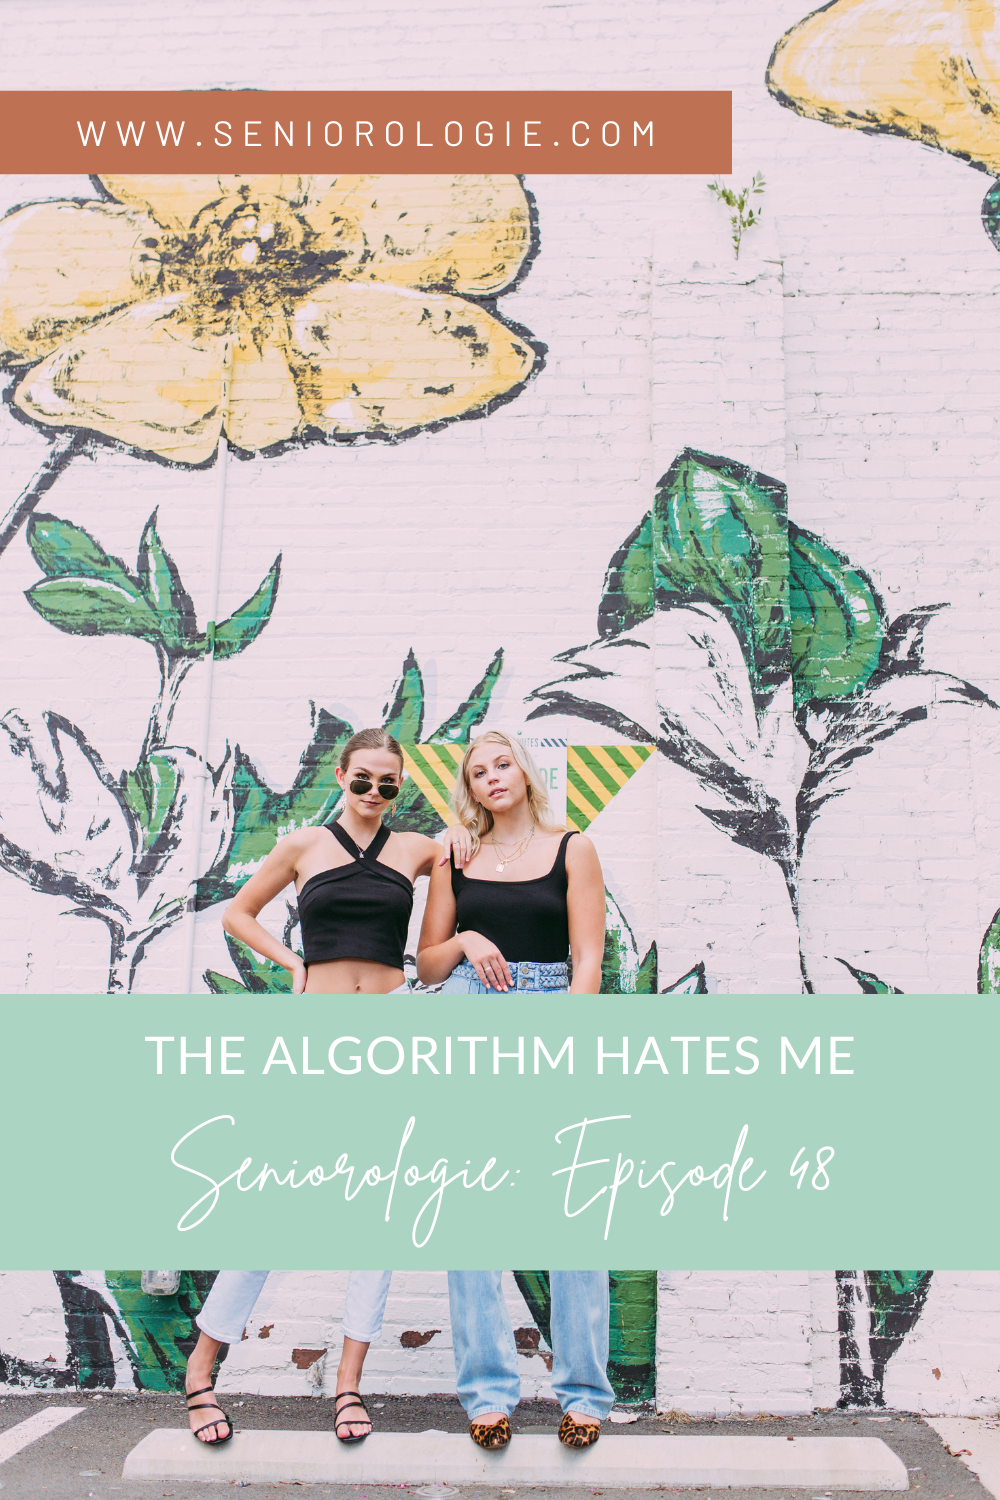 Instagram Algorithm Hacks for Senior Photographers from the Seniorologie Podcast. Leslie shares her top tips to beat the Instagram Algorithm